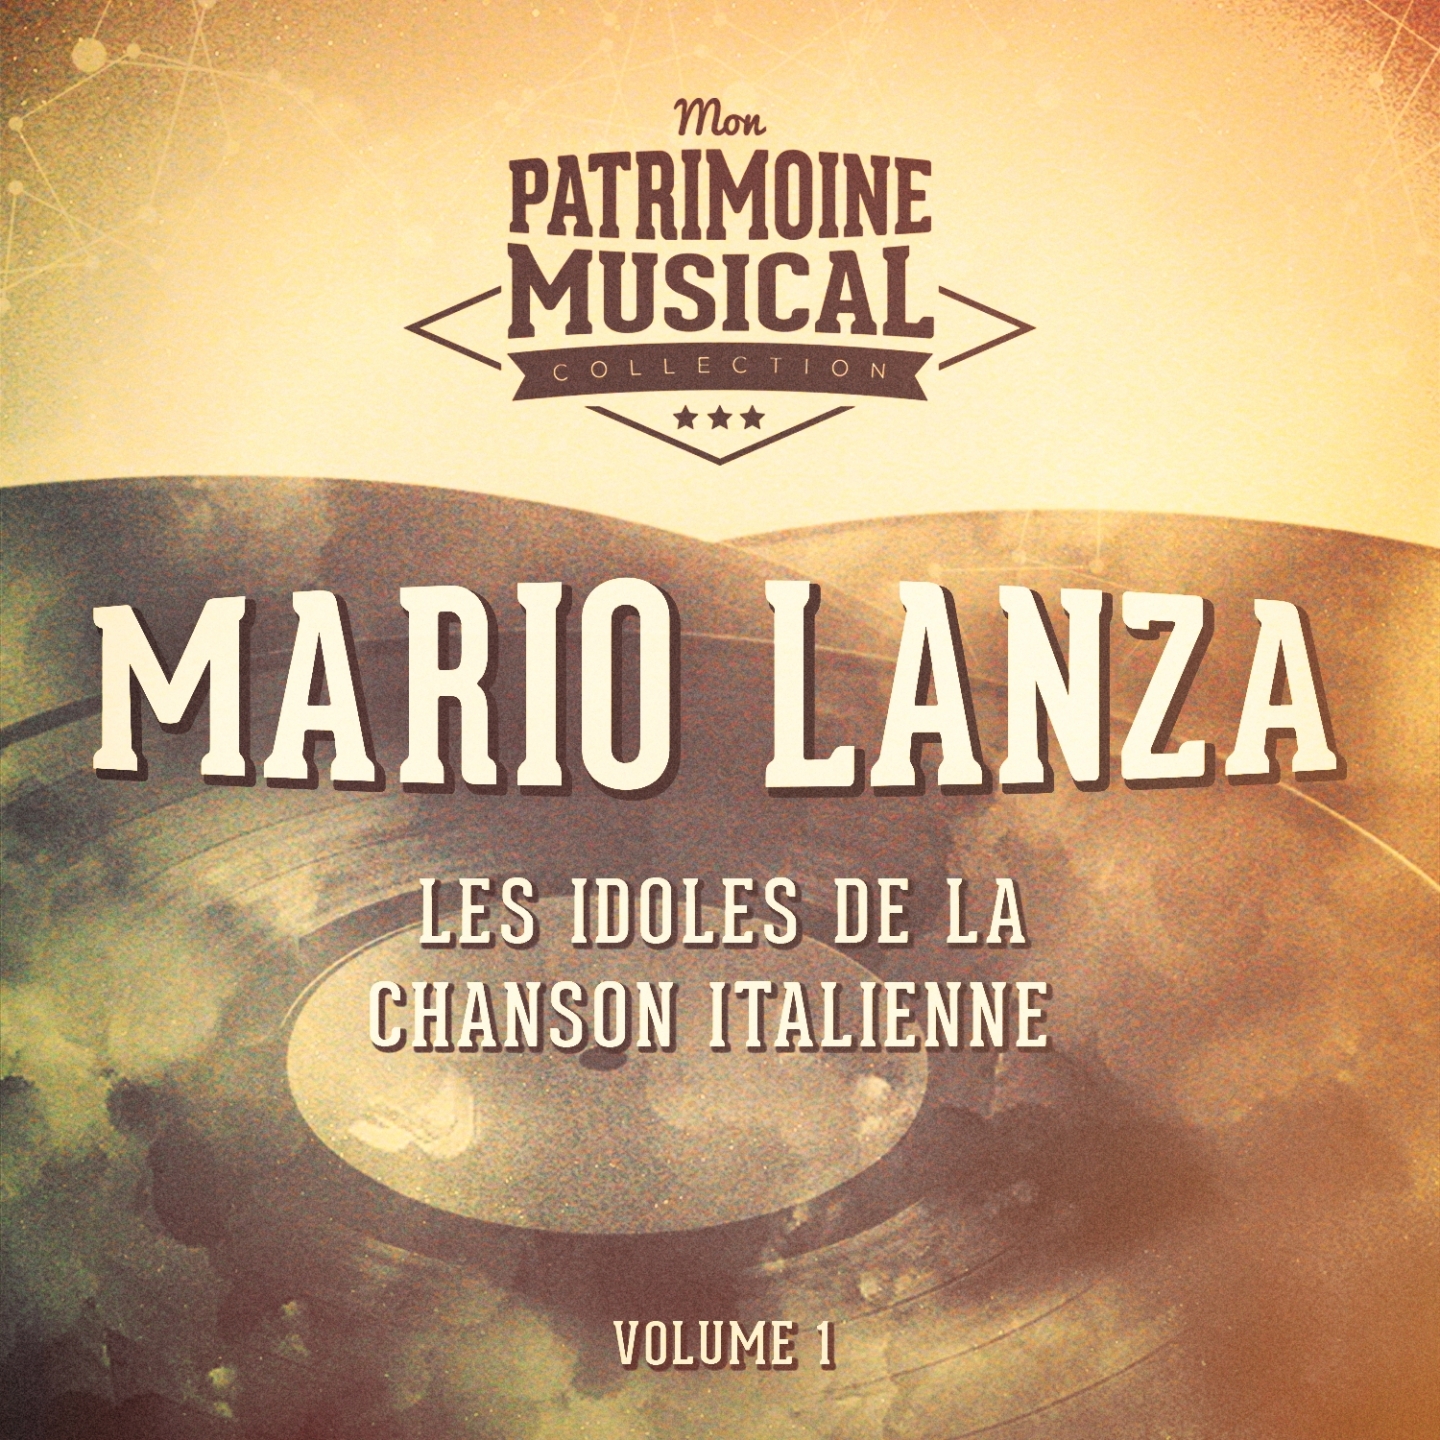 Les idoles de la chanson italienne : Mario Lanza, Vol. 1